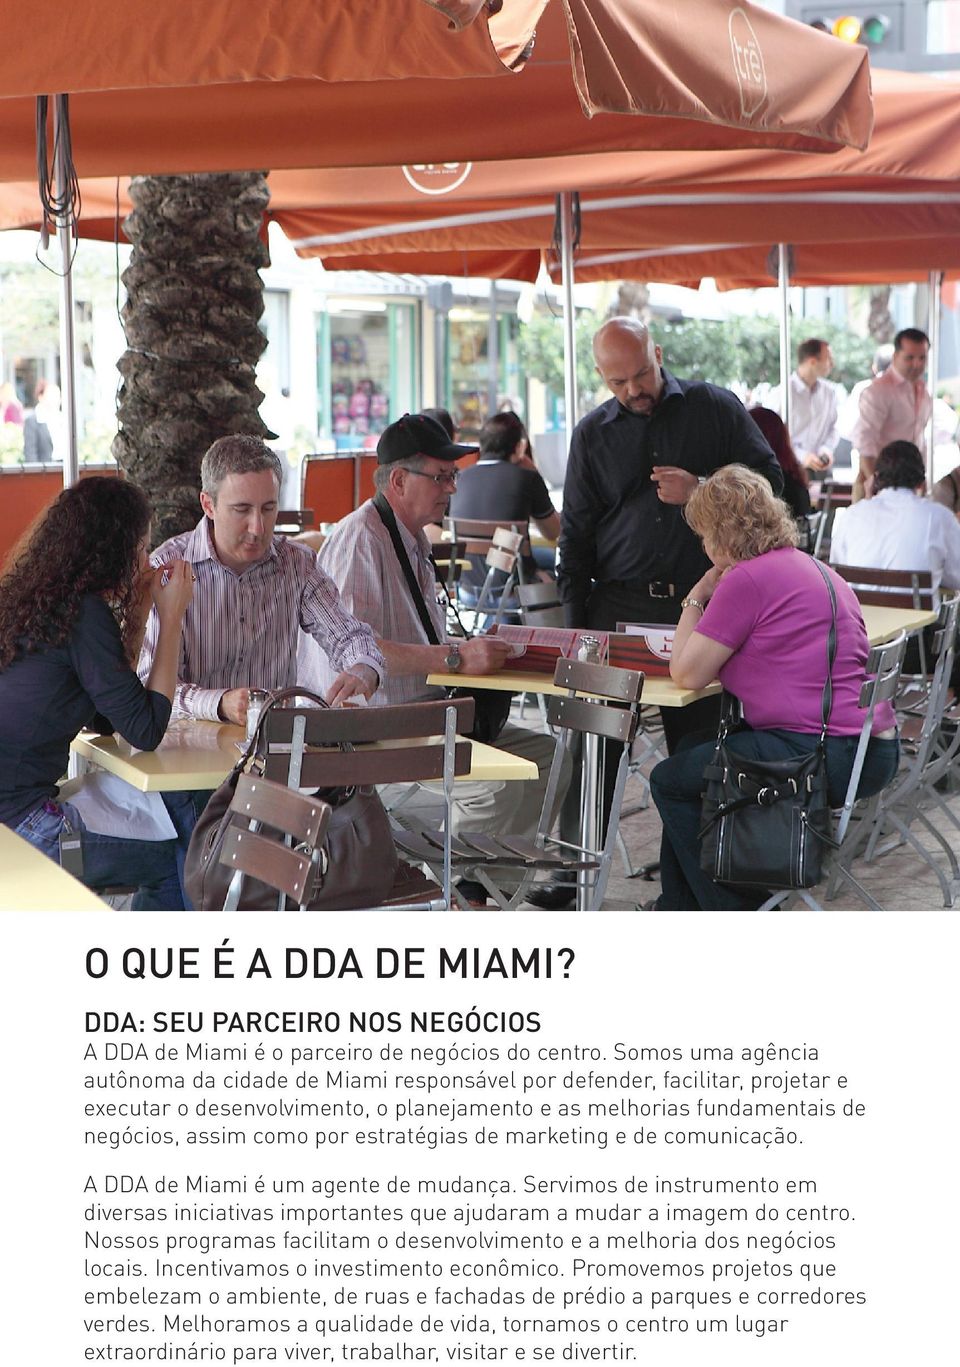 estratégias de marketing e de comunicação. A DDA de Miami é um agente de mudança. Servimos de instrumento em diversas iniciativas importantes que ajudaram a mudar a imagem do centro.